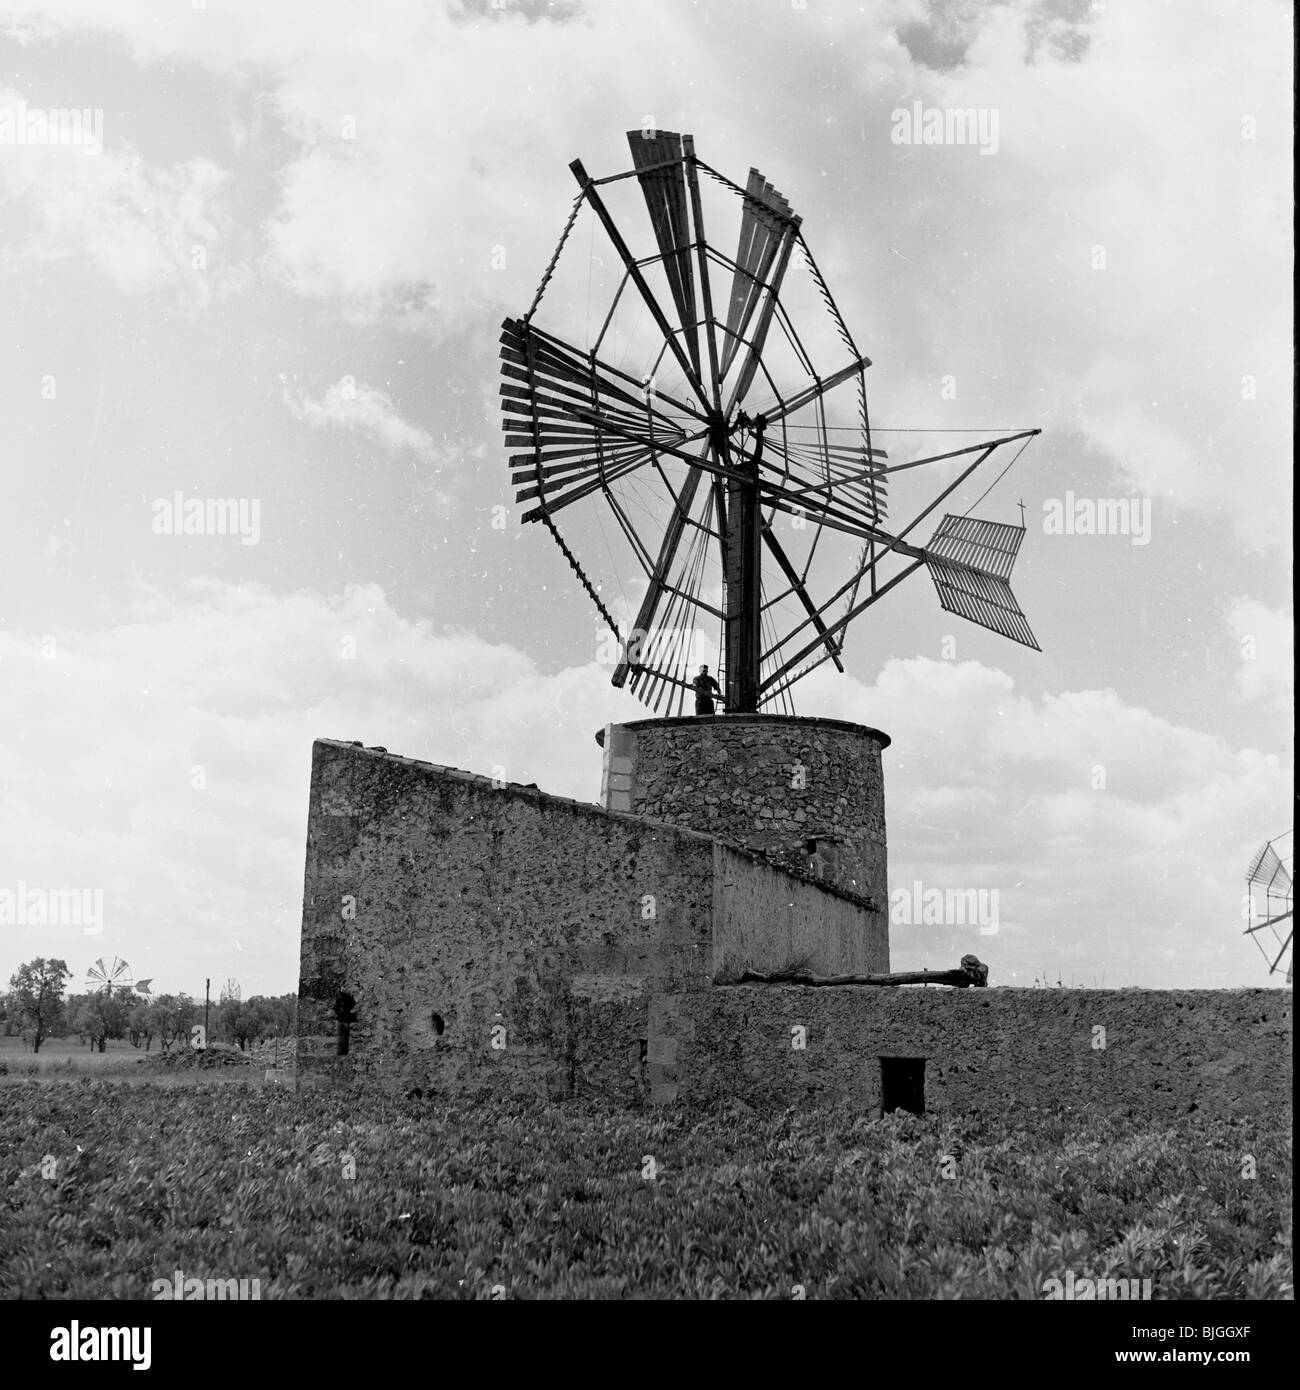 der 1950er Jahre in dieses Geschichtsbild durch J Allan Cash sehen wir eine traditioneller Bauernhof Windmühle auf dem Lande, Palma, Spanien. Stockfoto